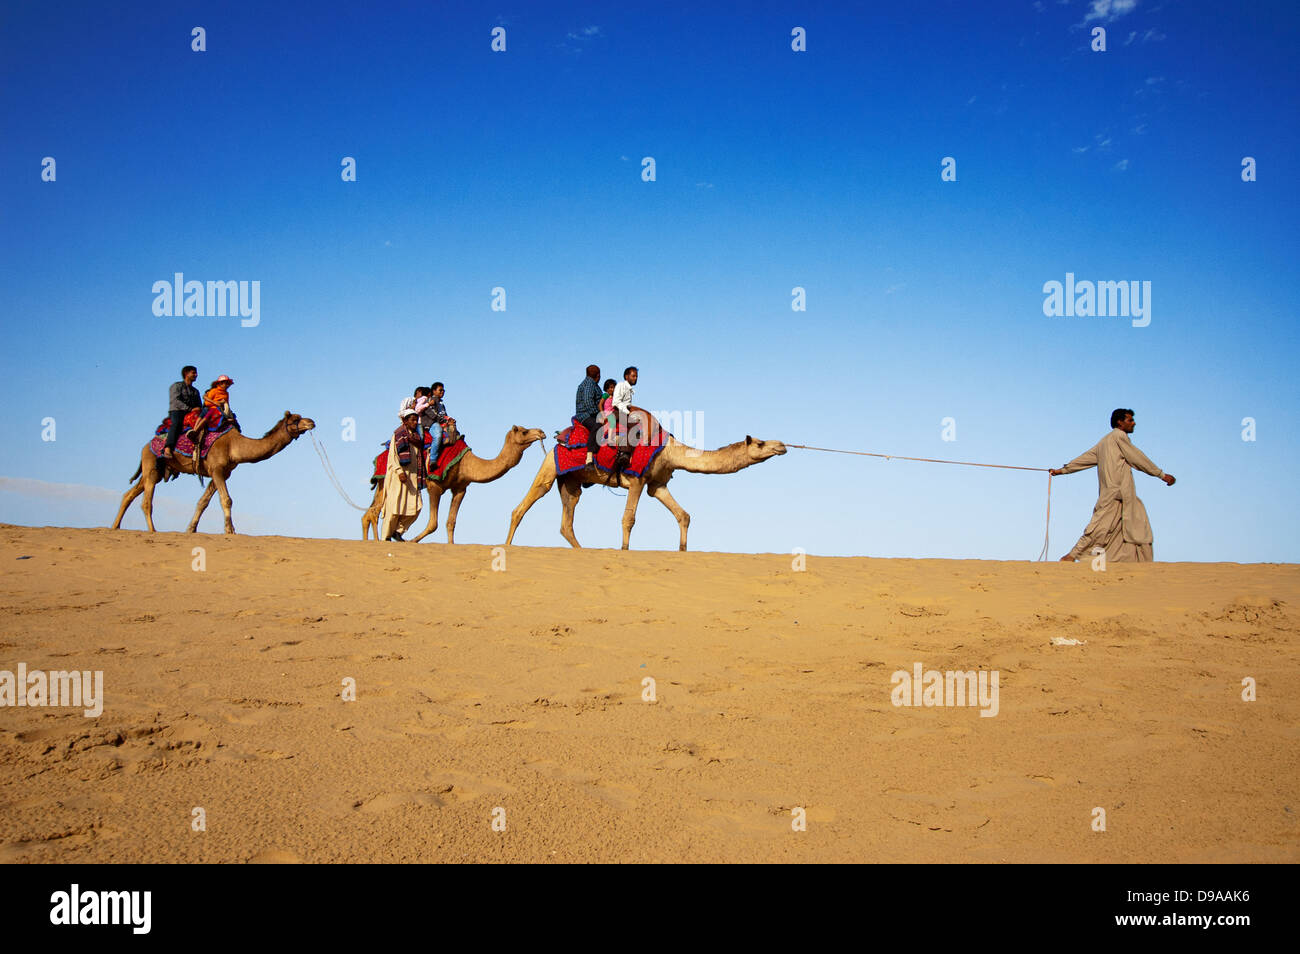 Chamelier et clients au Sam dune de sable à Jaisalmer, Inde. Banque D'Images